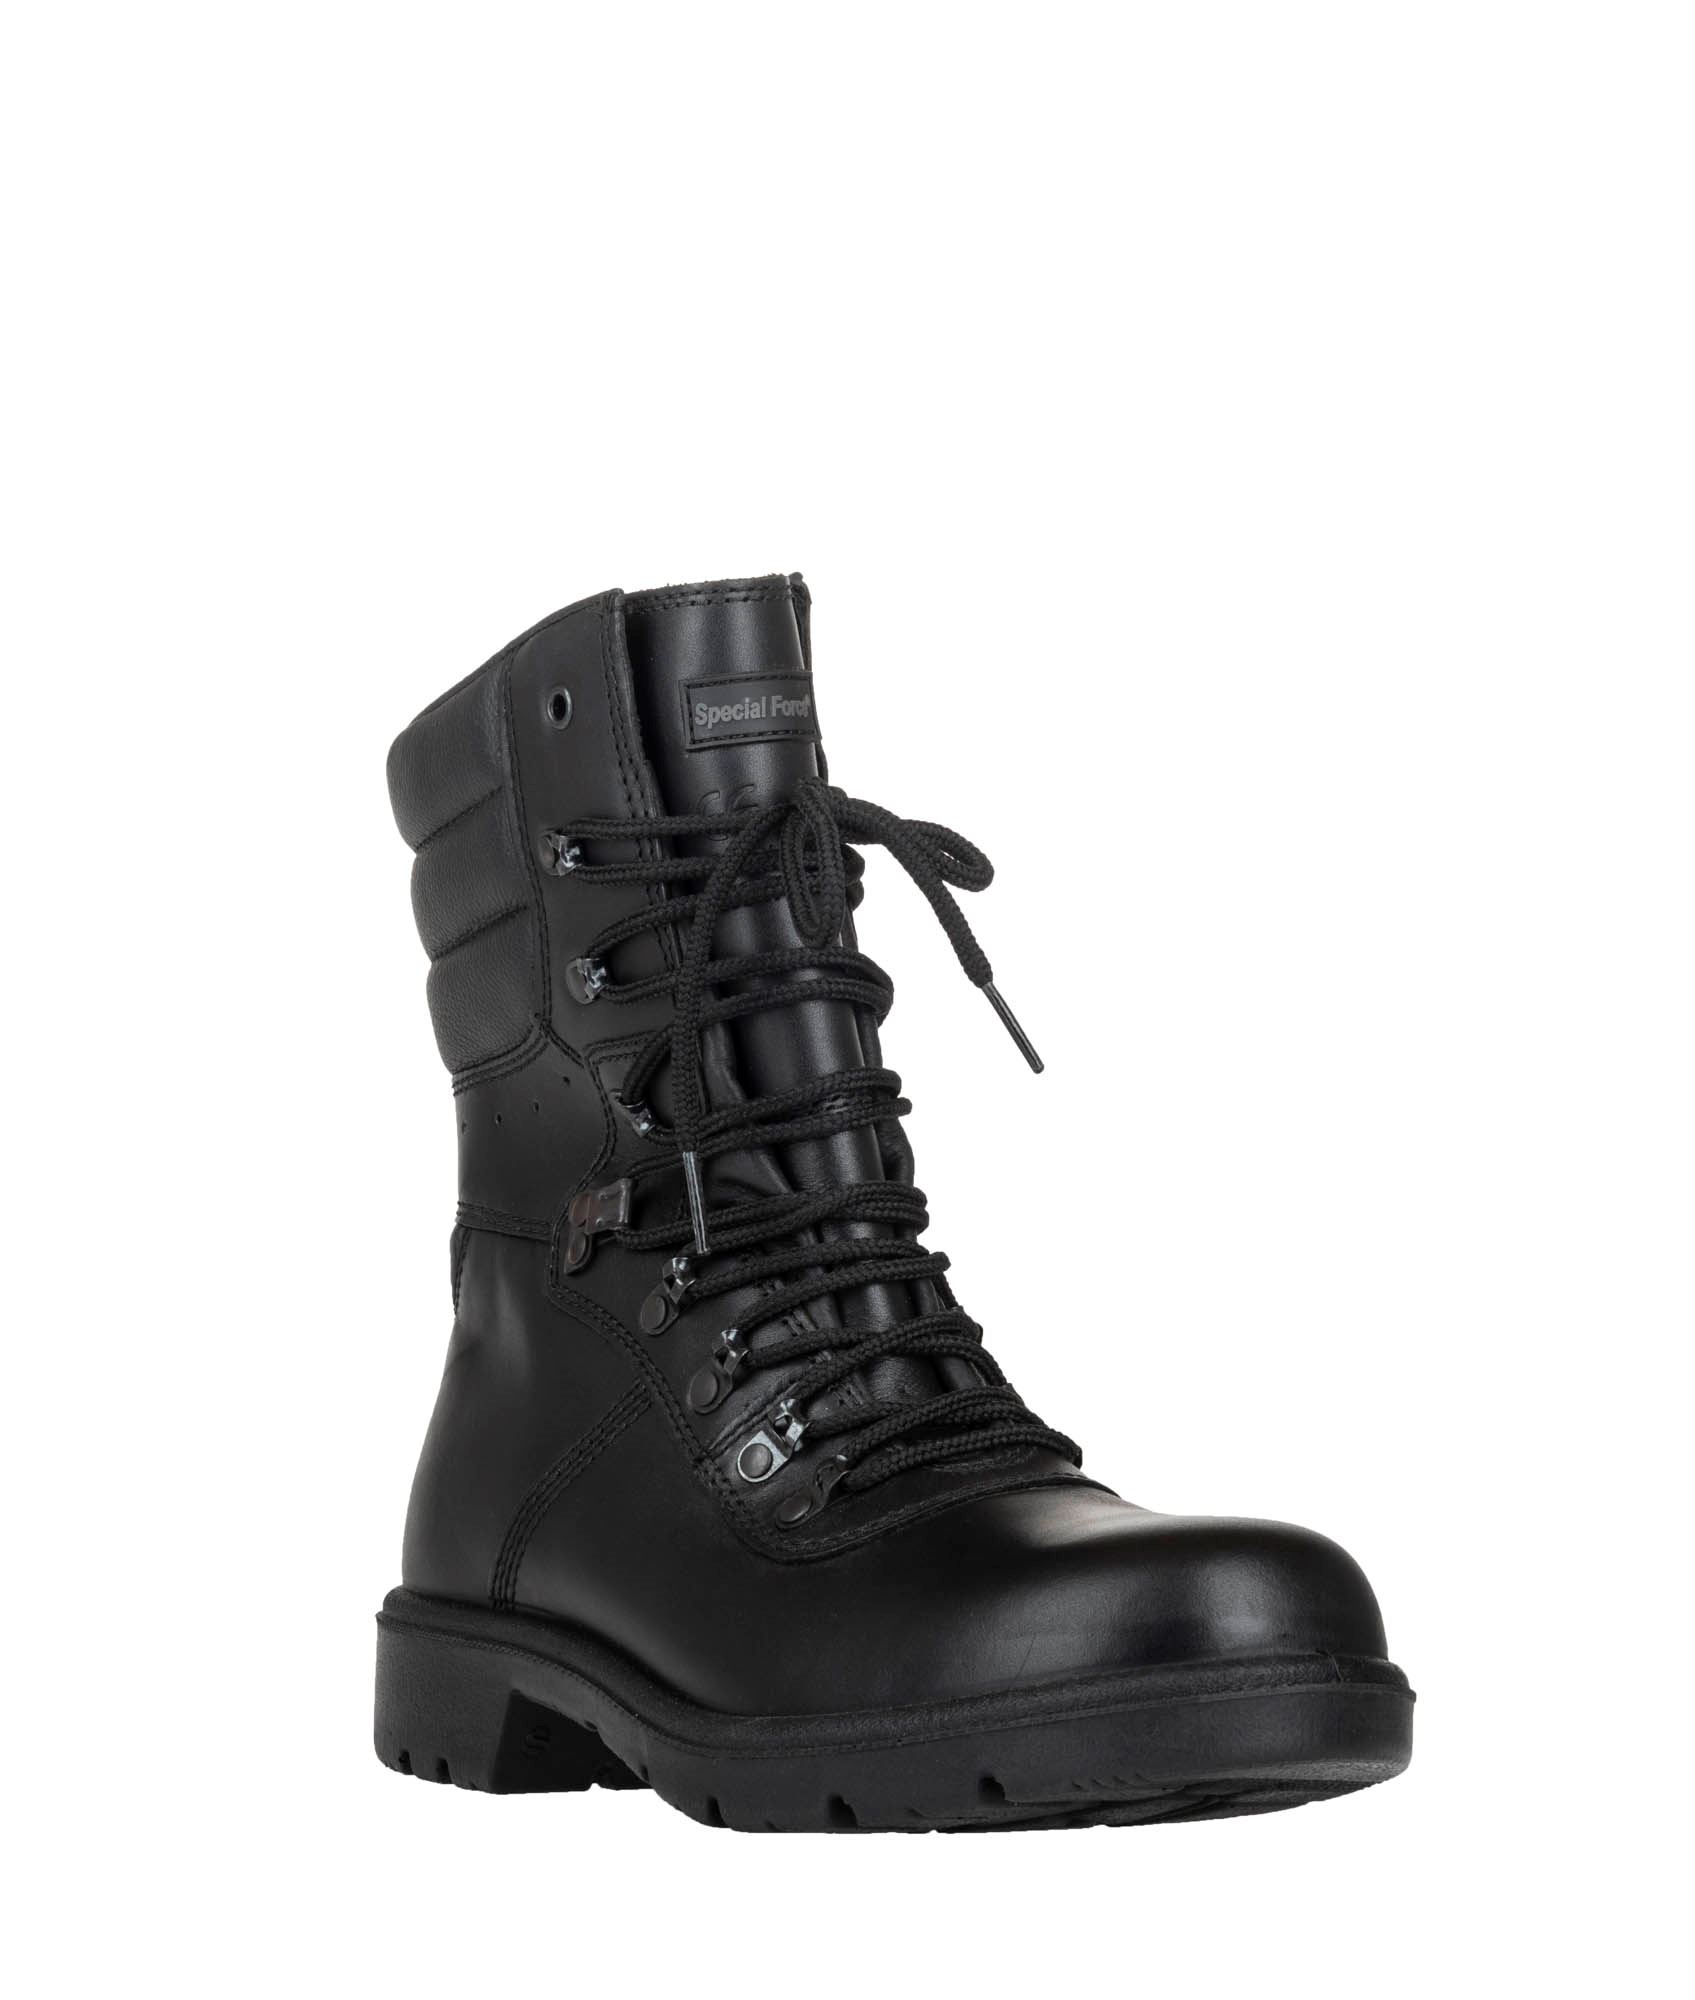 Regnfuld pedal kunstner Special Force militærstøvler fra forsvaret. Køb billigt hos 417.dk